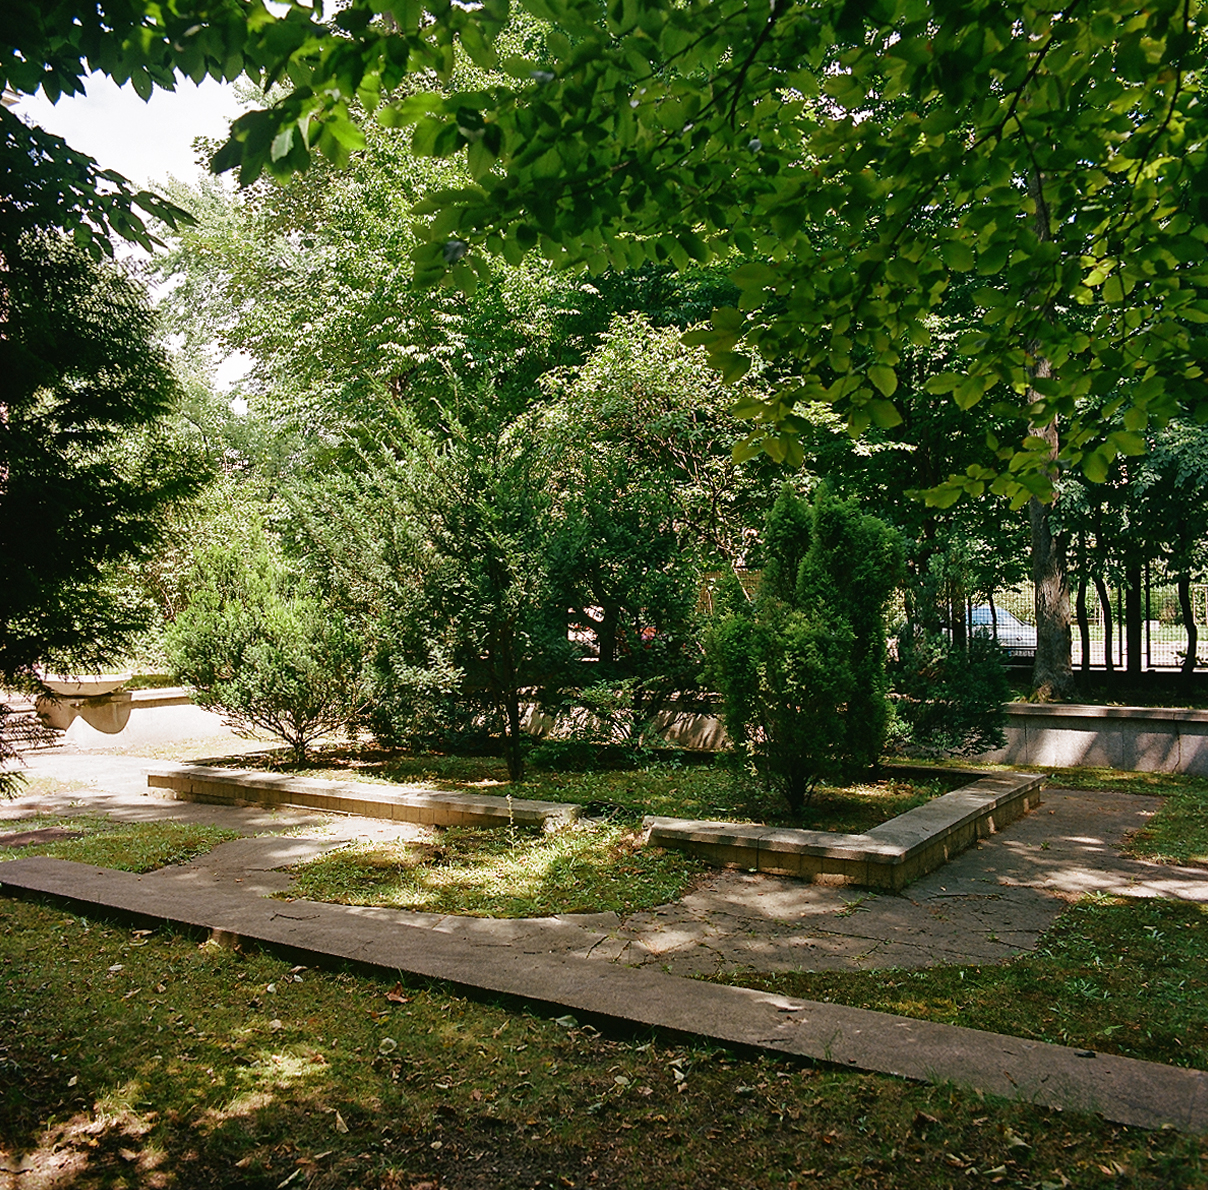 Basen w ogrodzie Instytutu Radowego, zainaugurowanym przez Marię Skłodowską-Curie w 1925 r. przy ulicy Wawelskiej w Warszawie. Sadzawka wymaga opróżnienia, remontu, przywrócenia cech stylowych małej architektury oraz obsadzenia roślinami wodnymi.